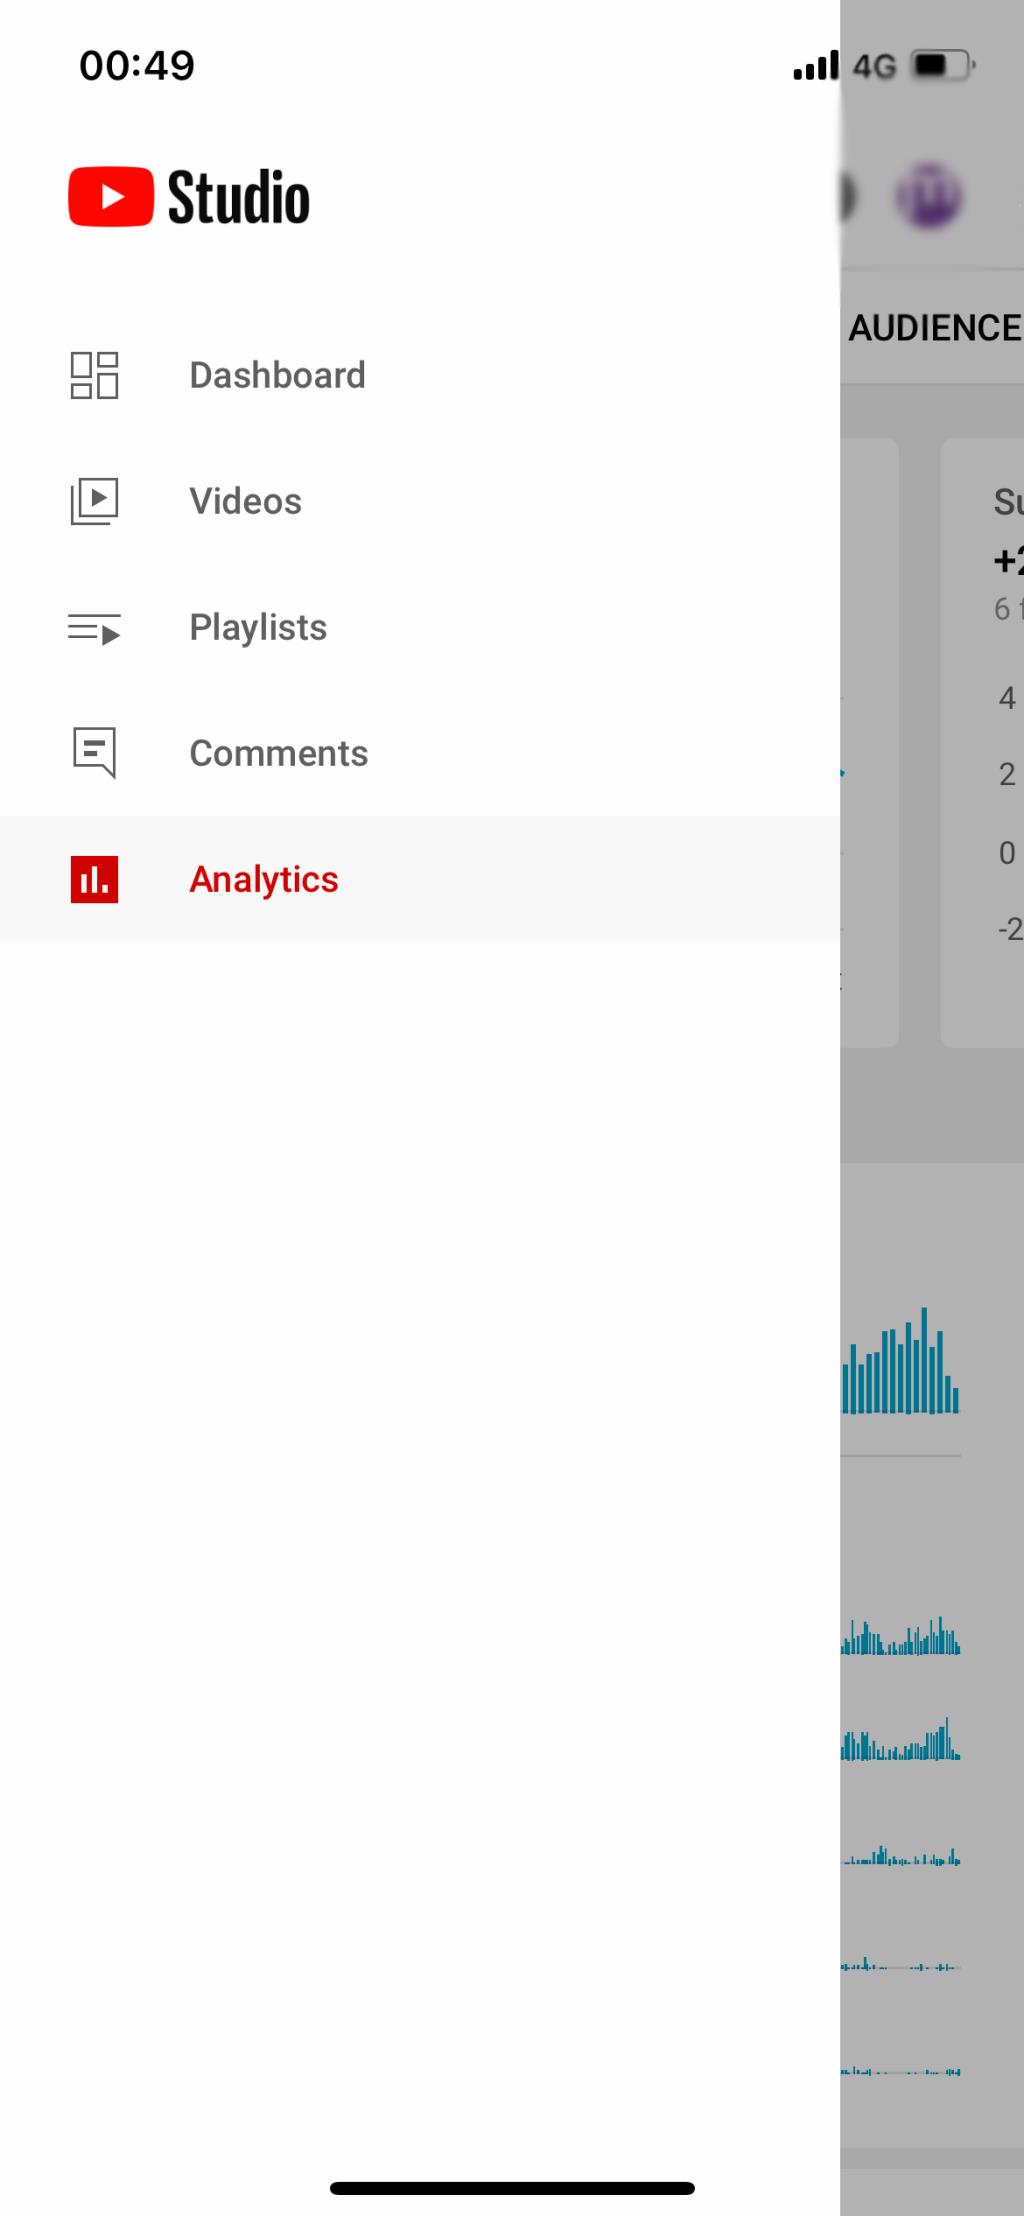 วิธีใช้แอป YouTube Studio เพื่อตรวจสอบรายได้และ Analytics